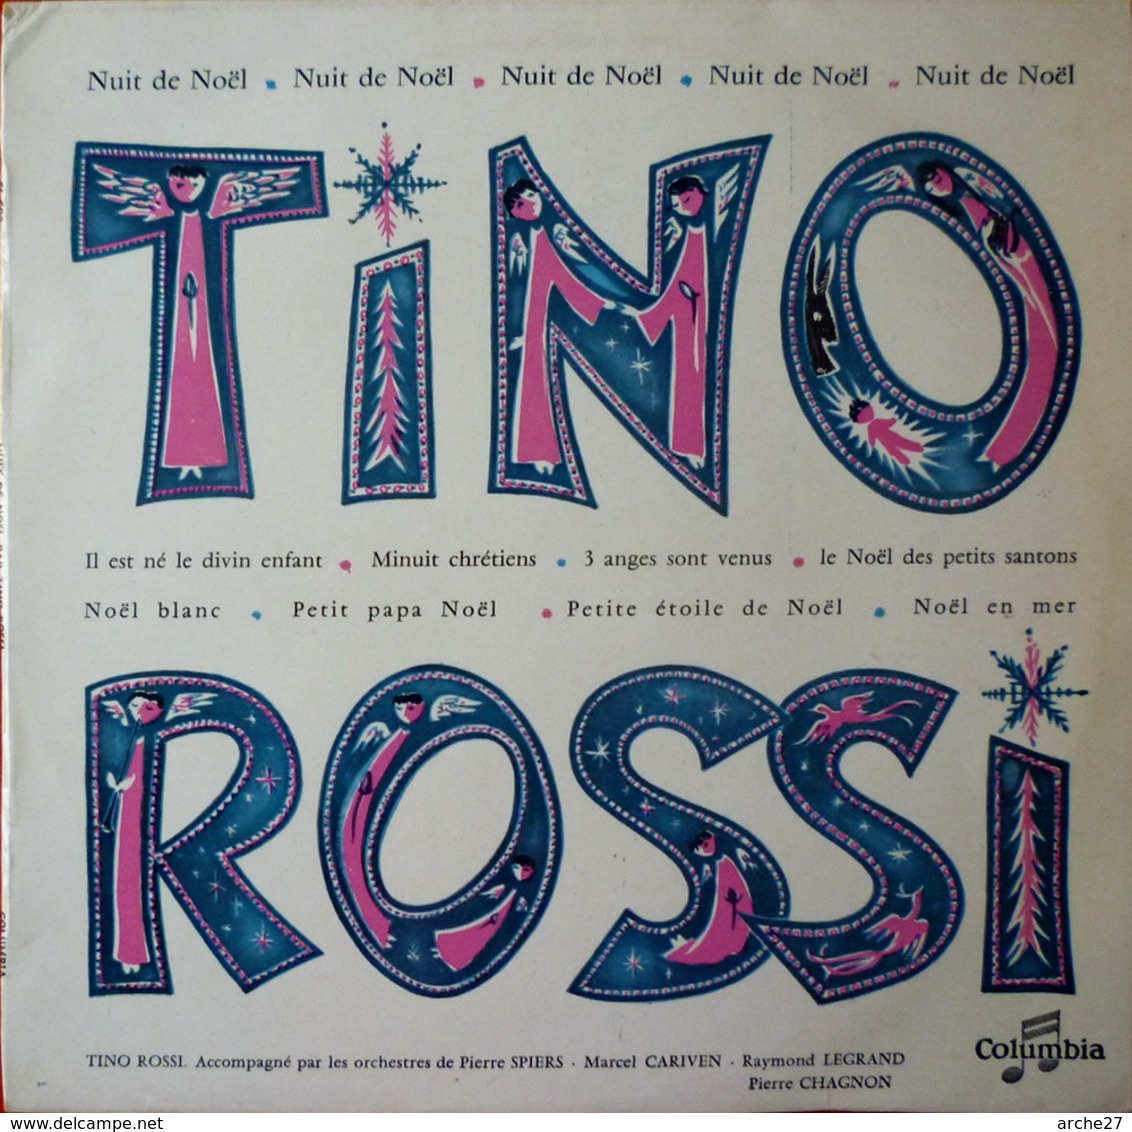 TINO ROSSI - 25 Cm - 33T - Disque Vinyle - Nuit De Noël - FJ 502 - Navidad